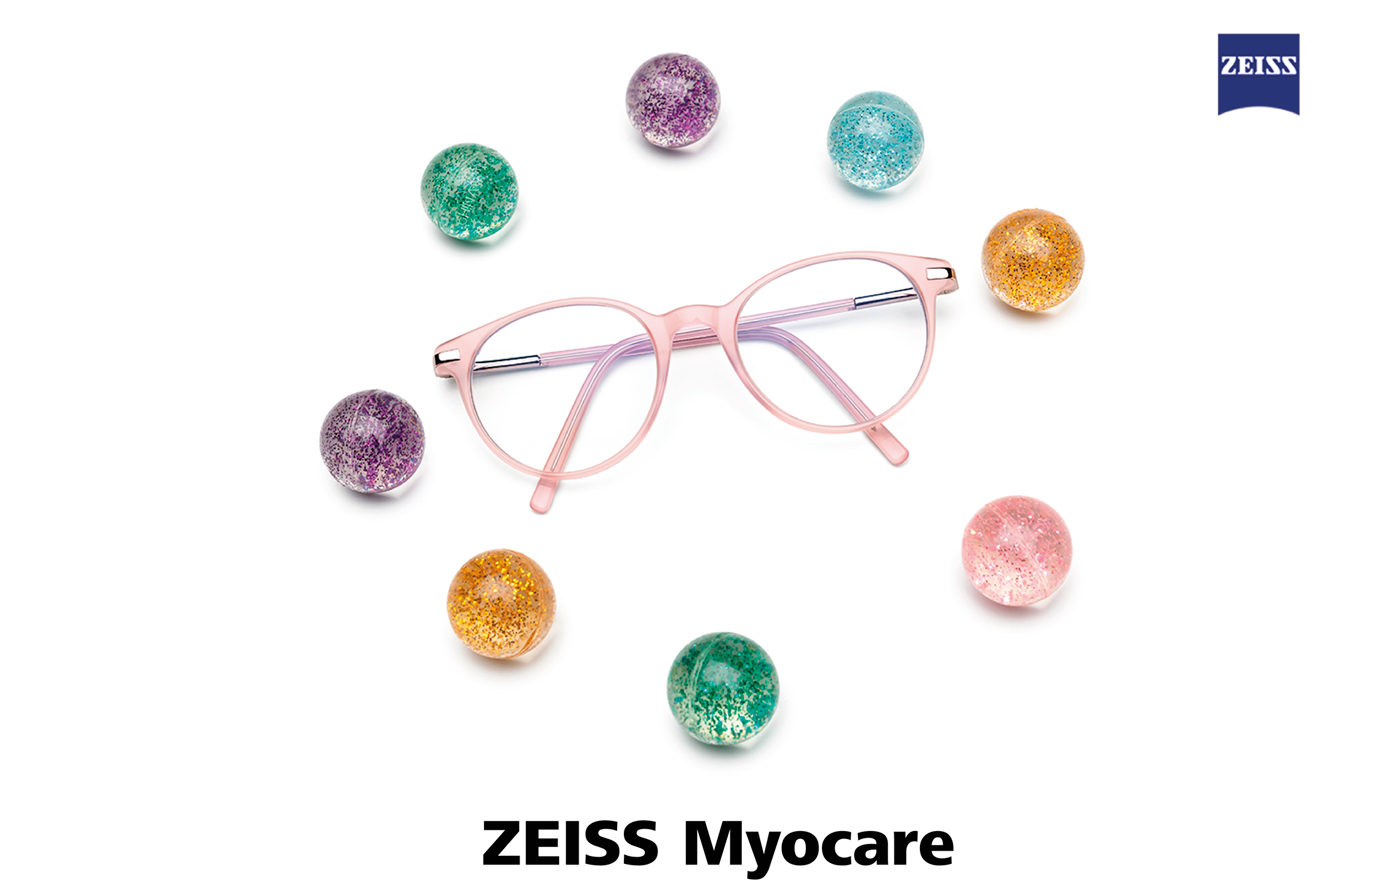 ZEISS MyoCare: Campaña Digital Logra +30M de Visitas